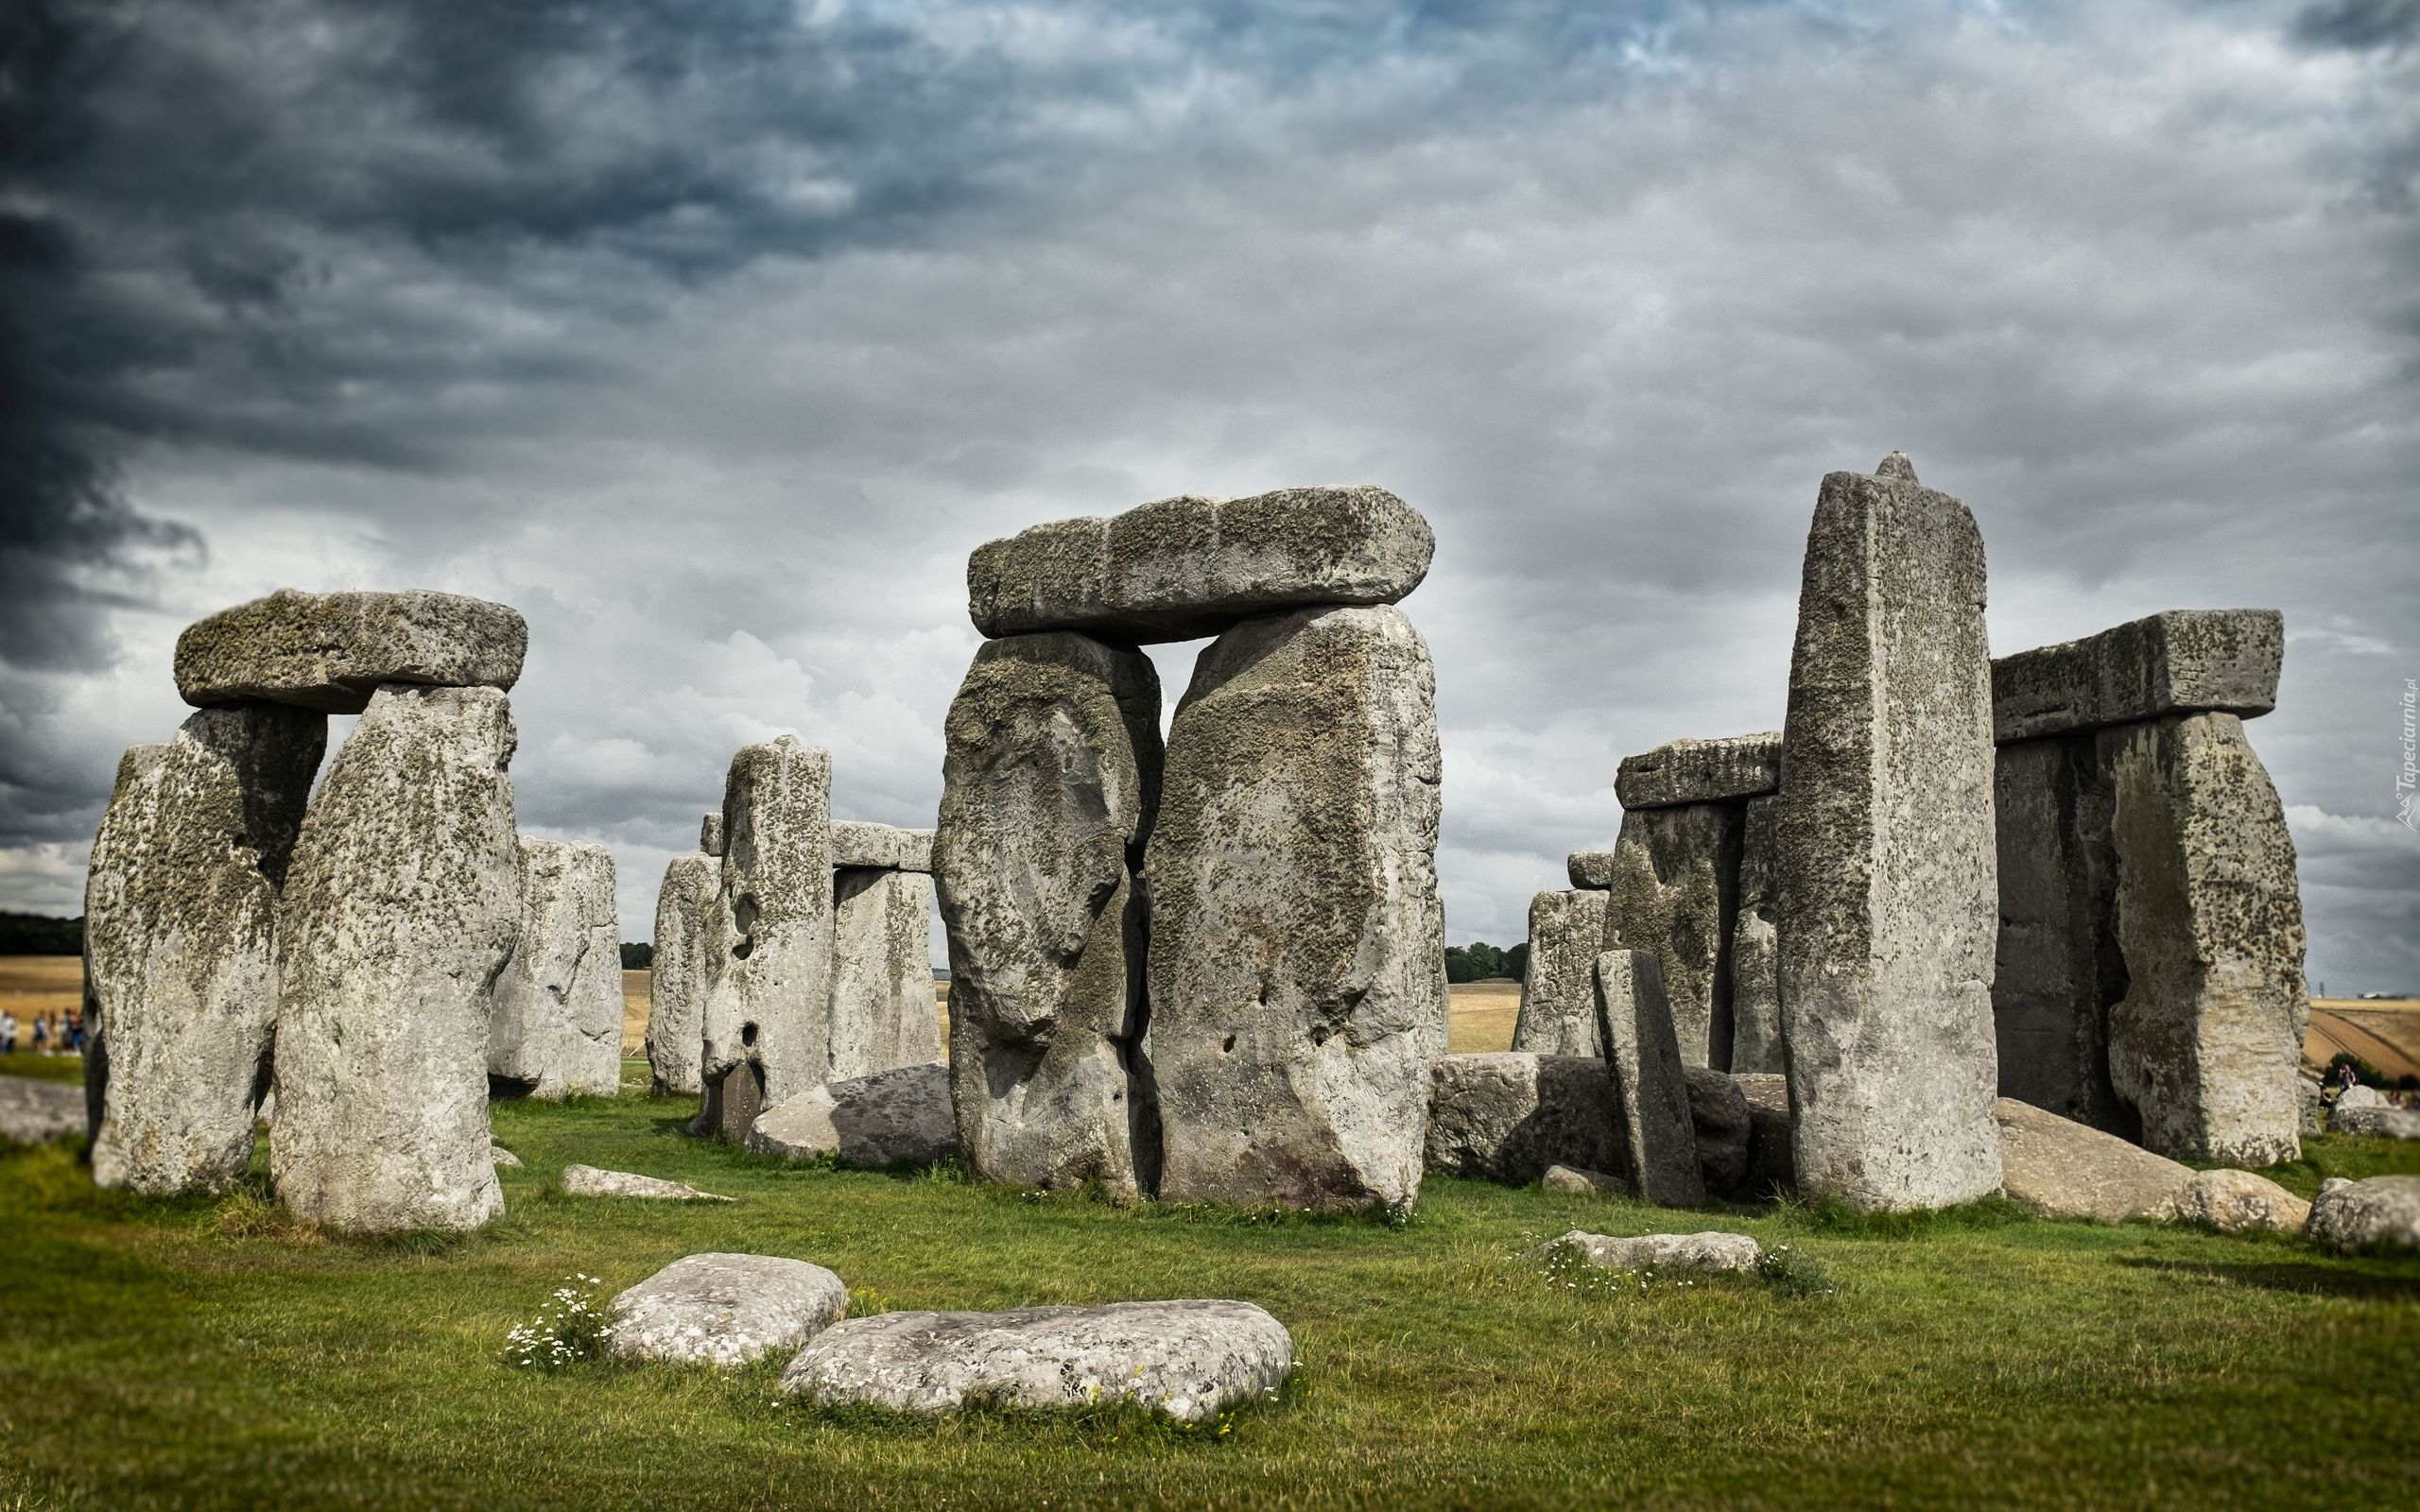 Kamienie, Krąg, Kromlech Stonehenge, Okolice Salisbury, Hrabstwo Wiltshire, Anglia